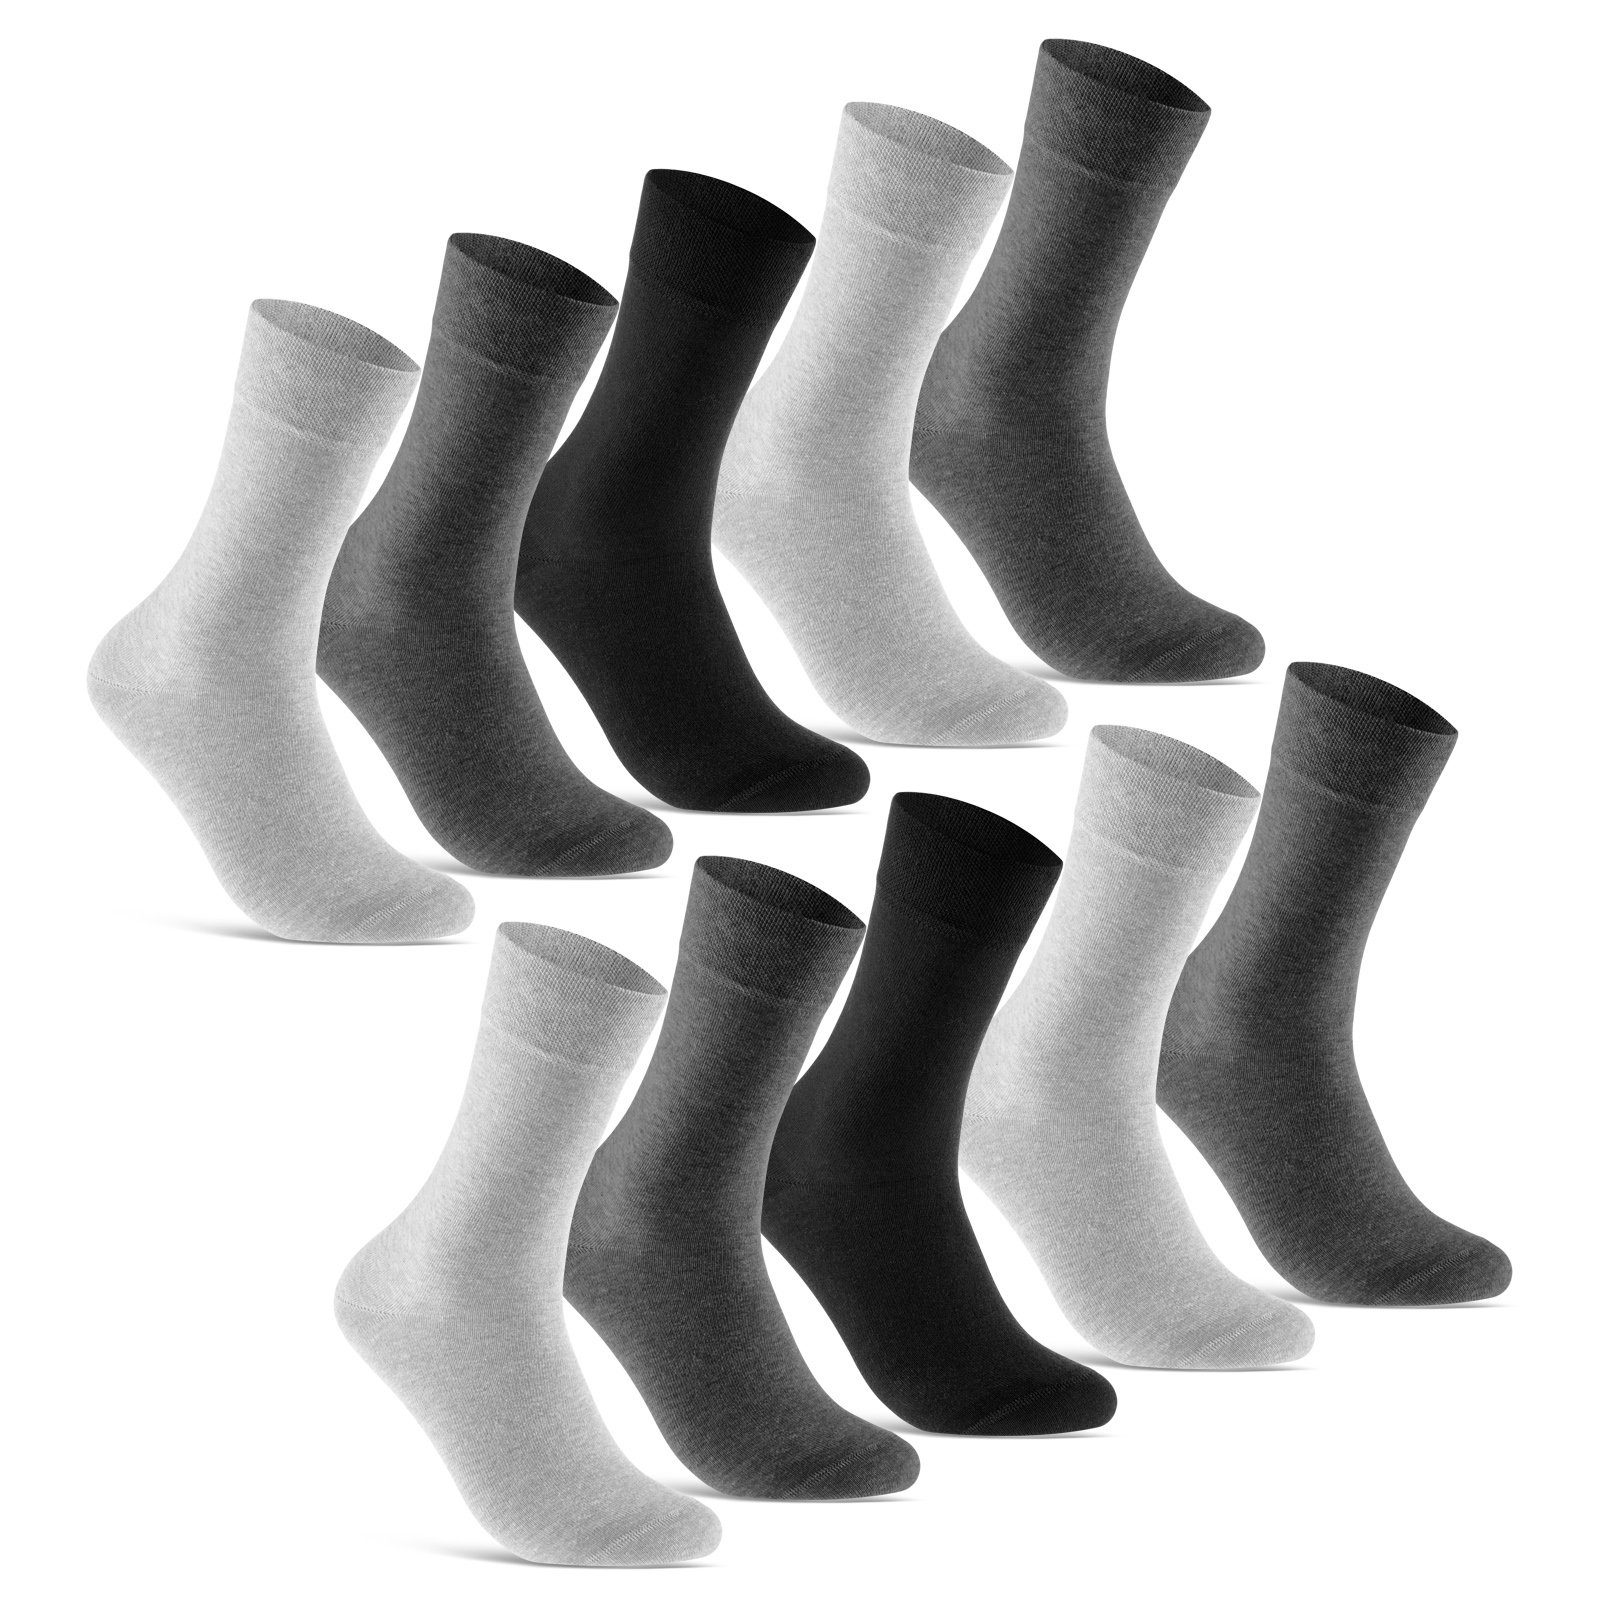 sockenkauf24 Socken 10 Paar Premium Socken Herren & Damen Komfort Business-Socken (Grau/Anthrazit/Schw, 10-Paar, 43-46) aus gekämmter Baumwolle mit Pique-Bund (Exclusive Line) - 70101T WP